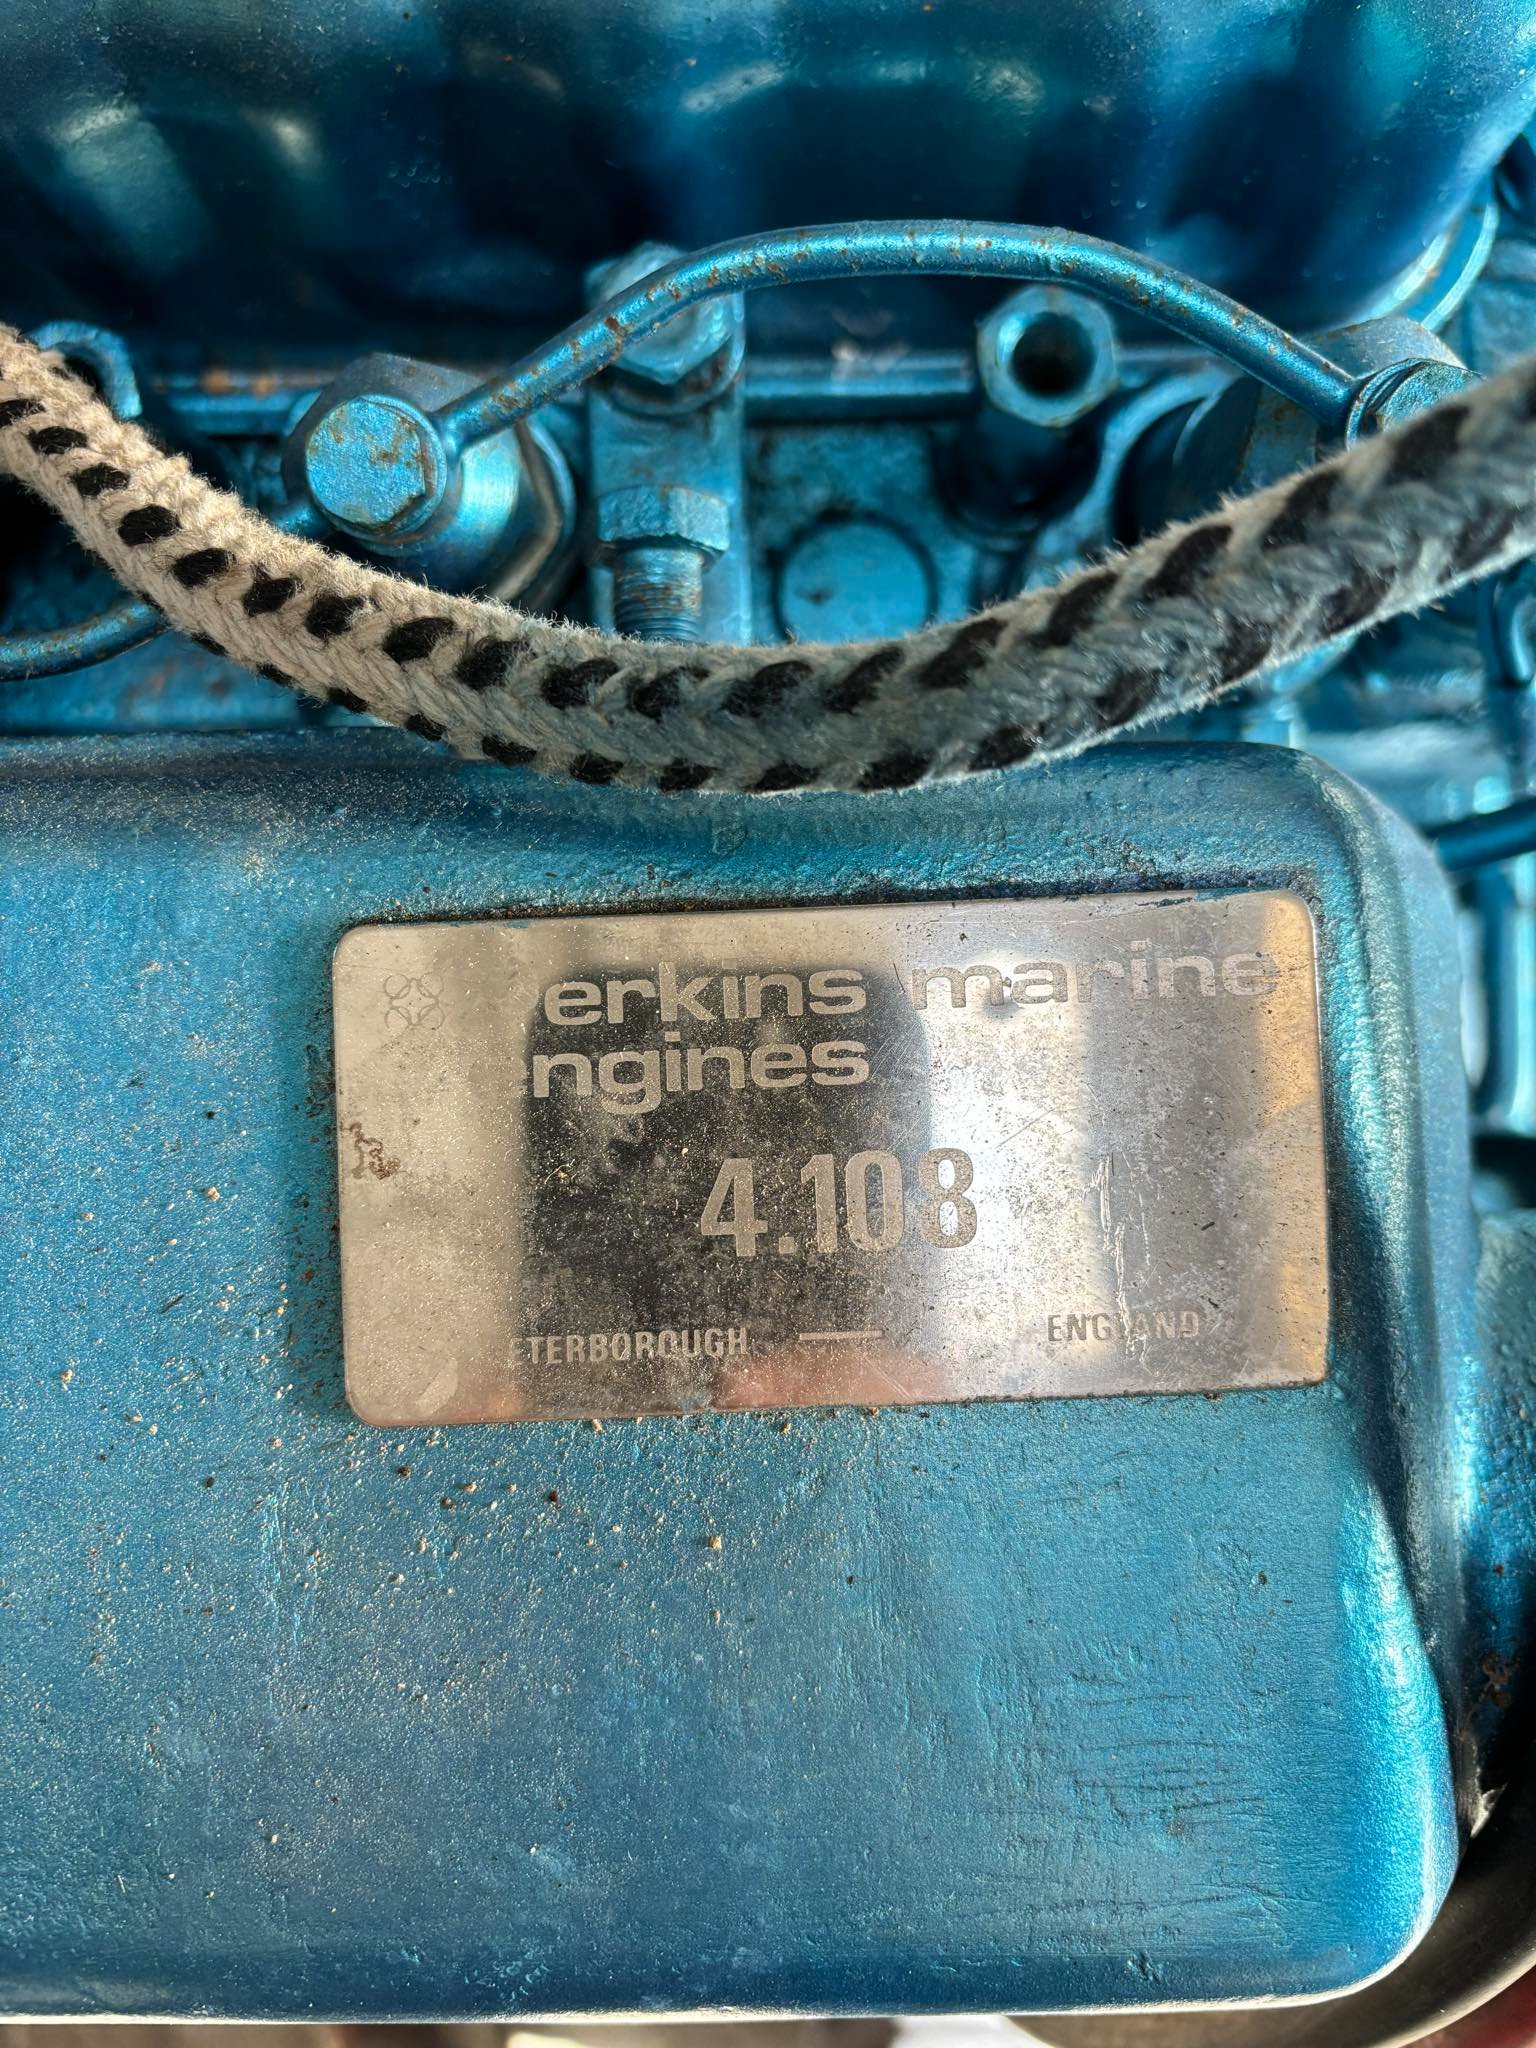 Diesel marino Perkins 4108